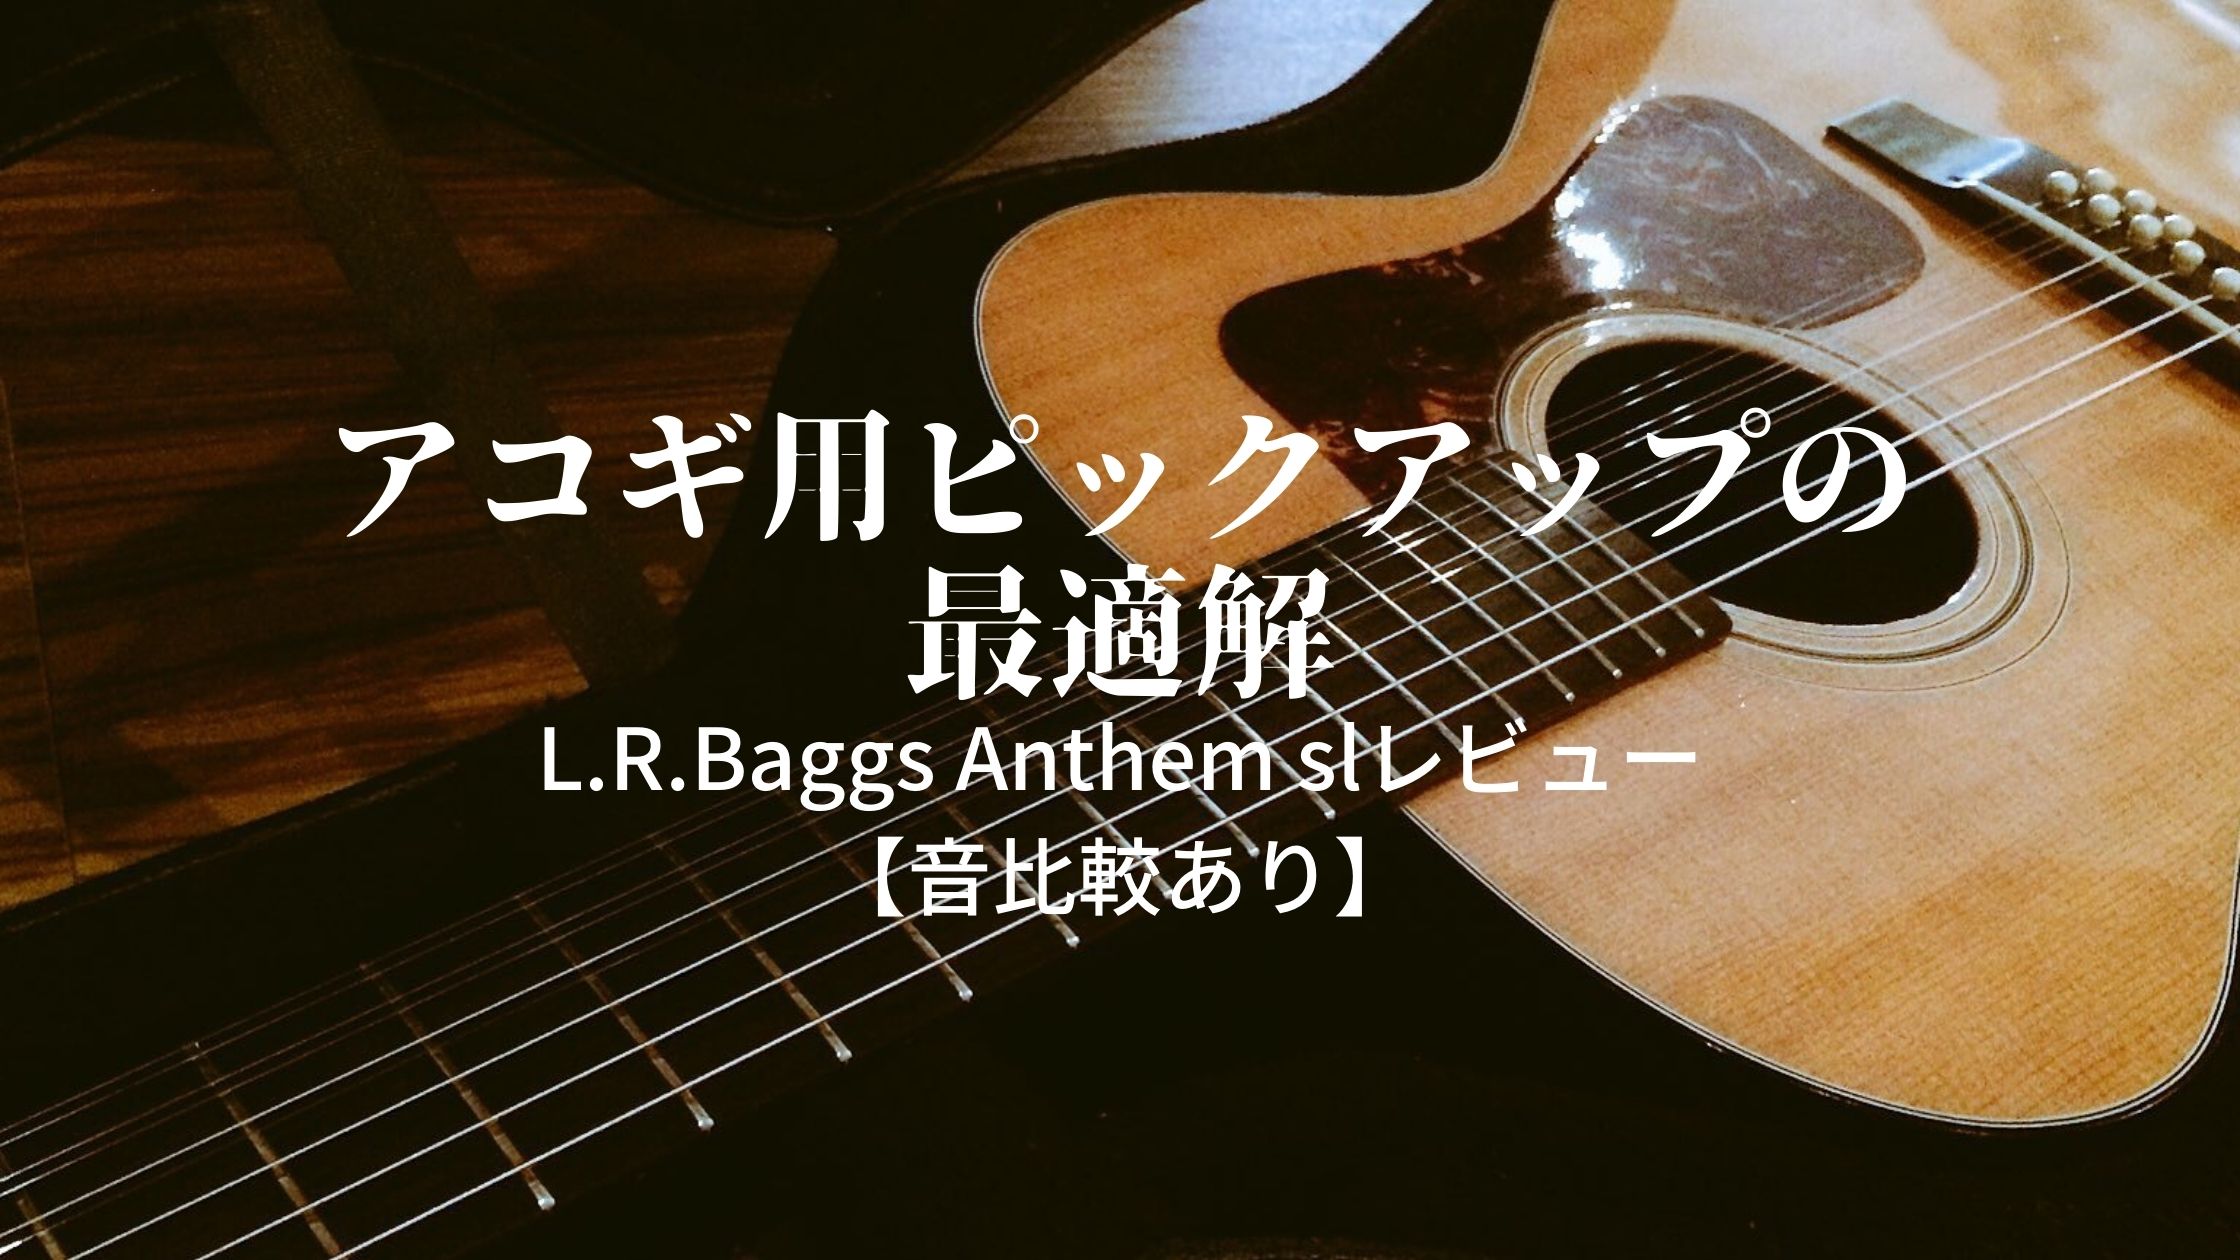 生音に近いオススメのアコギ用ピックアップ｜L.R.Baggs Anthem slを 